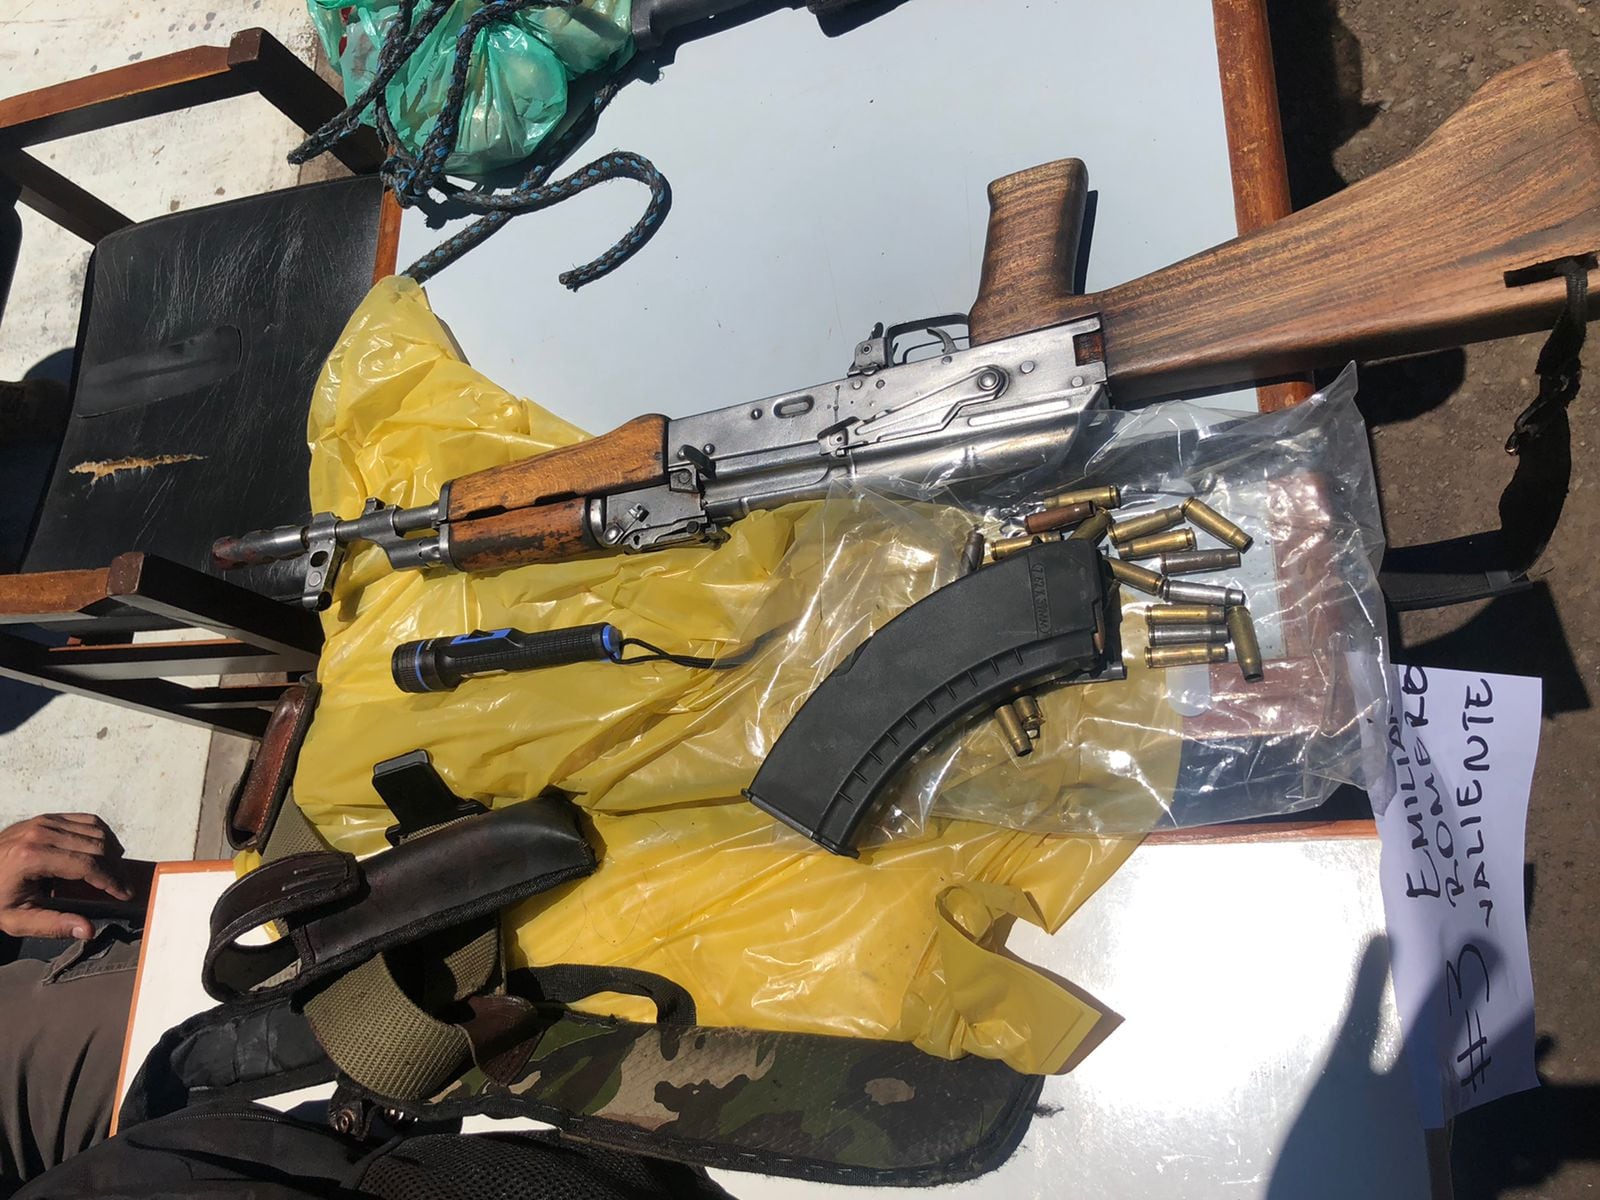 El fusil tipo AK-47 que portaba uno de los abatidos, Emiliano Romero Valiente, poblador de la ciudad de Puentesiño.